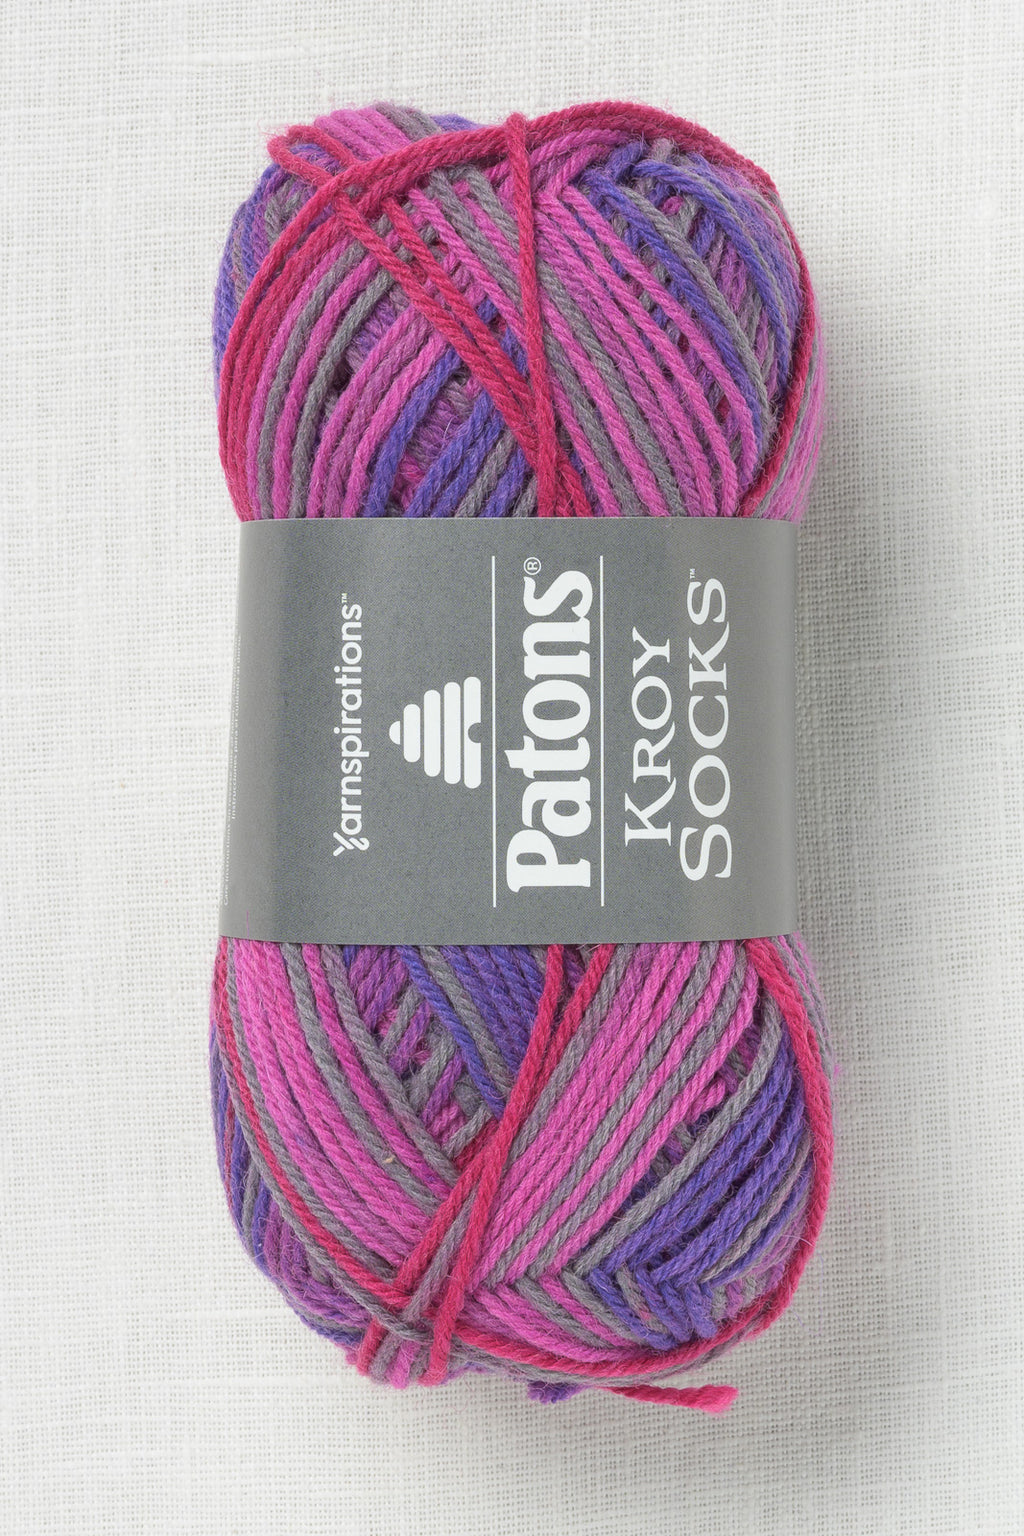 Patons Kroy Socks Purple Haze